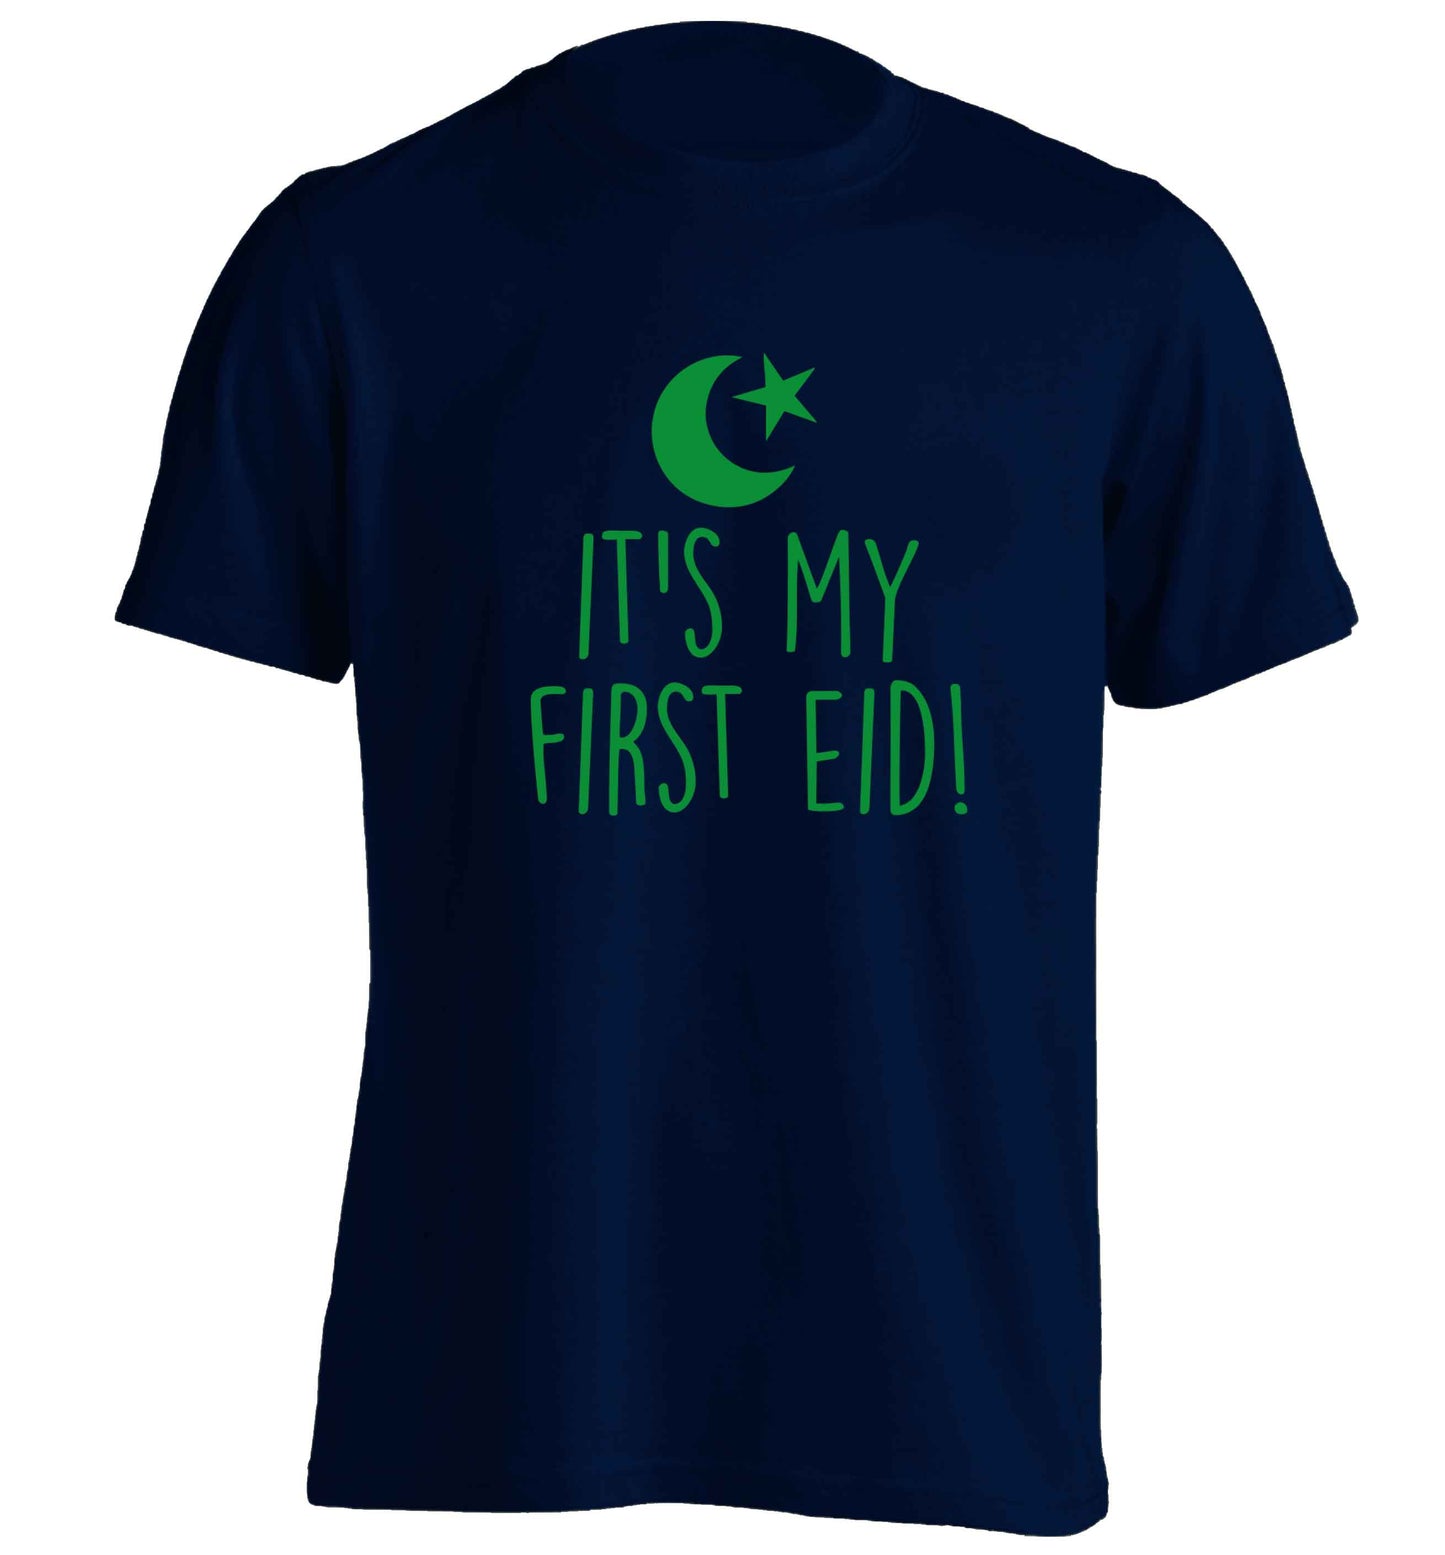 It's my first Eid adults unisex navy Tshirt 2XL